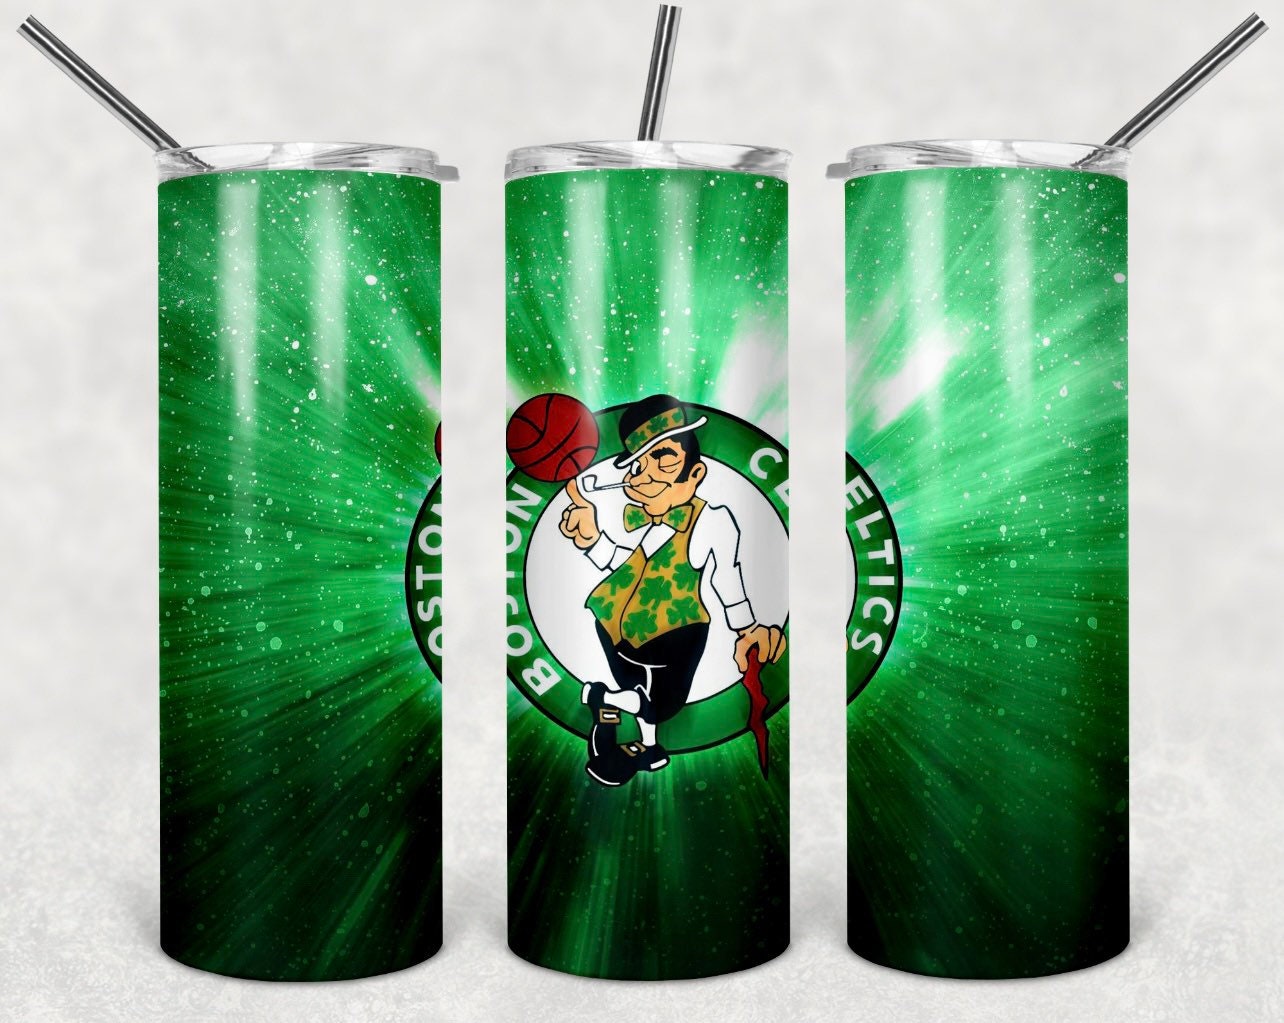 JBStudioDesigns9 Bleed Green 8-Bit Pixel Boston Celtics Playoffs Tee Shirt NBA Basketball Finals TD Garden Apparel Jayson Tatum Marcus Smart Jaylen Brown